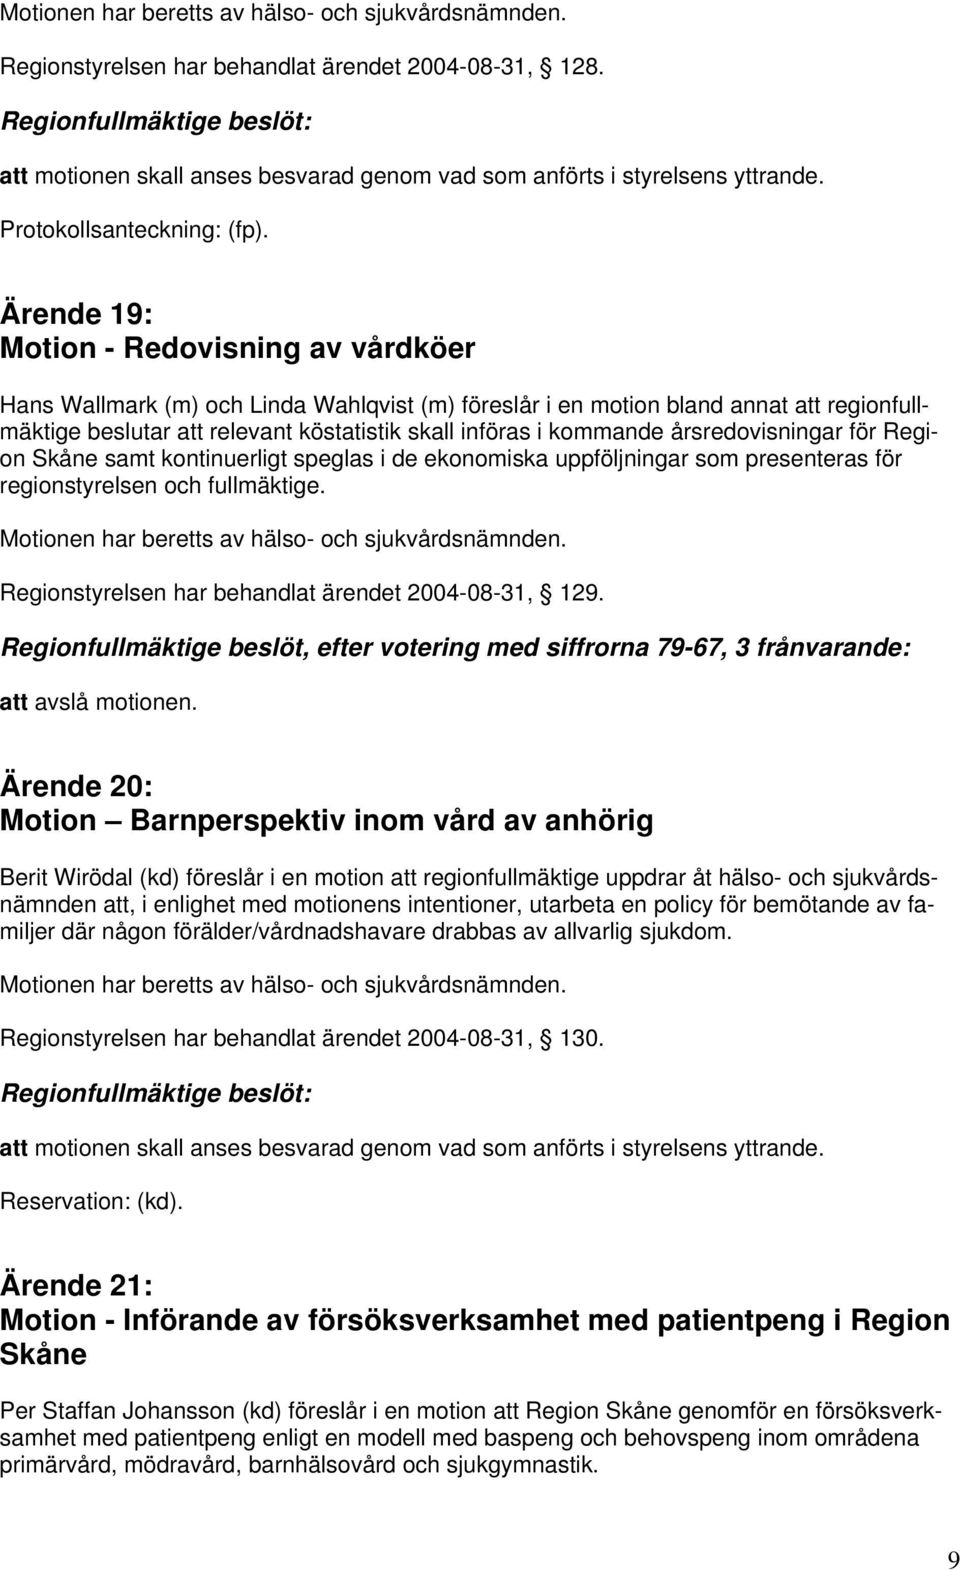 Ärende 19: Motion - Redovisning av vårdköer Hans Wallmark (m) och Linda Wahlqvist (m) föreslår i en motion bland annat att regionfullmäktige beslutar att relevant köstatistik skall införas i kommande